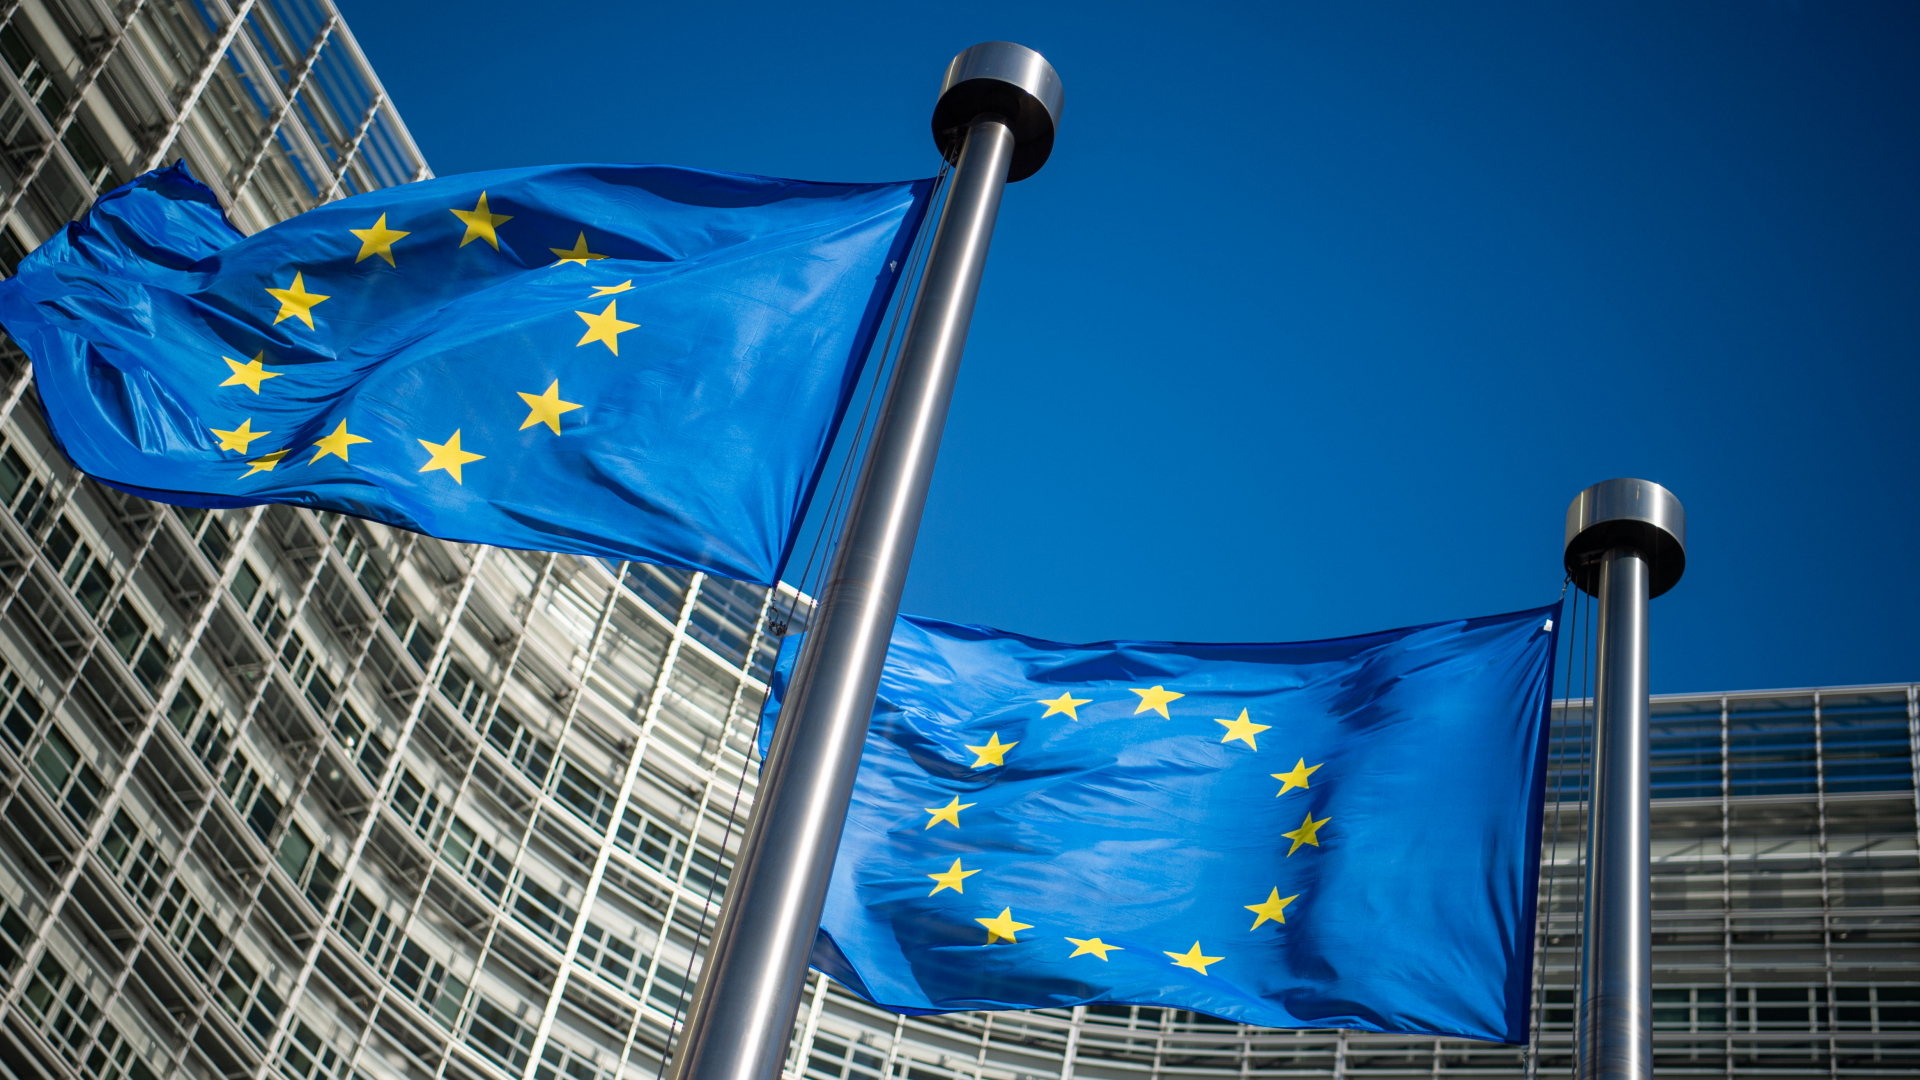 Flaggen der Europäischen Union wehen im Wind vor dem Berlaymont-Gebäude, dem Sitz der Europäischen Kommission.